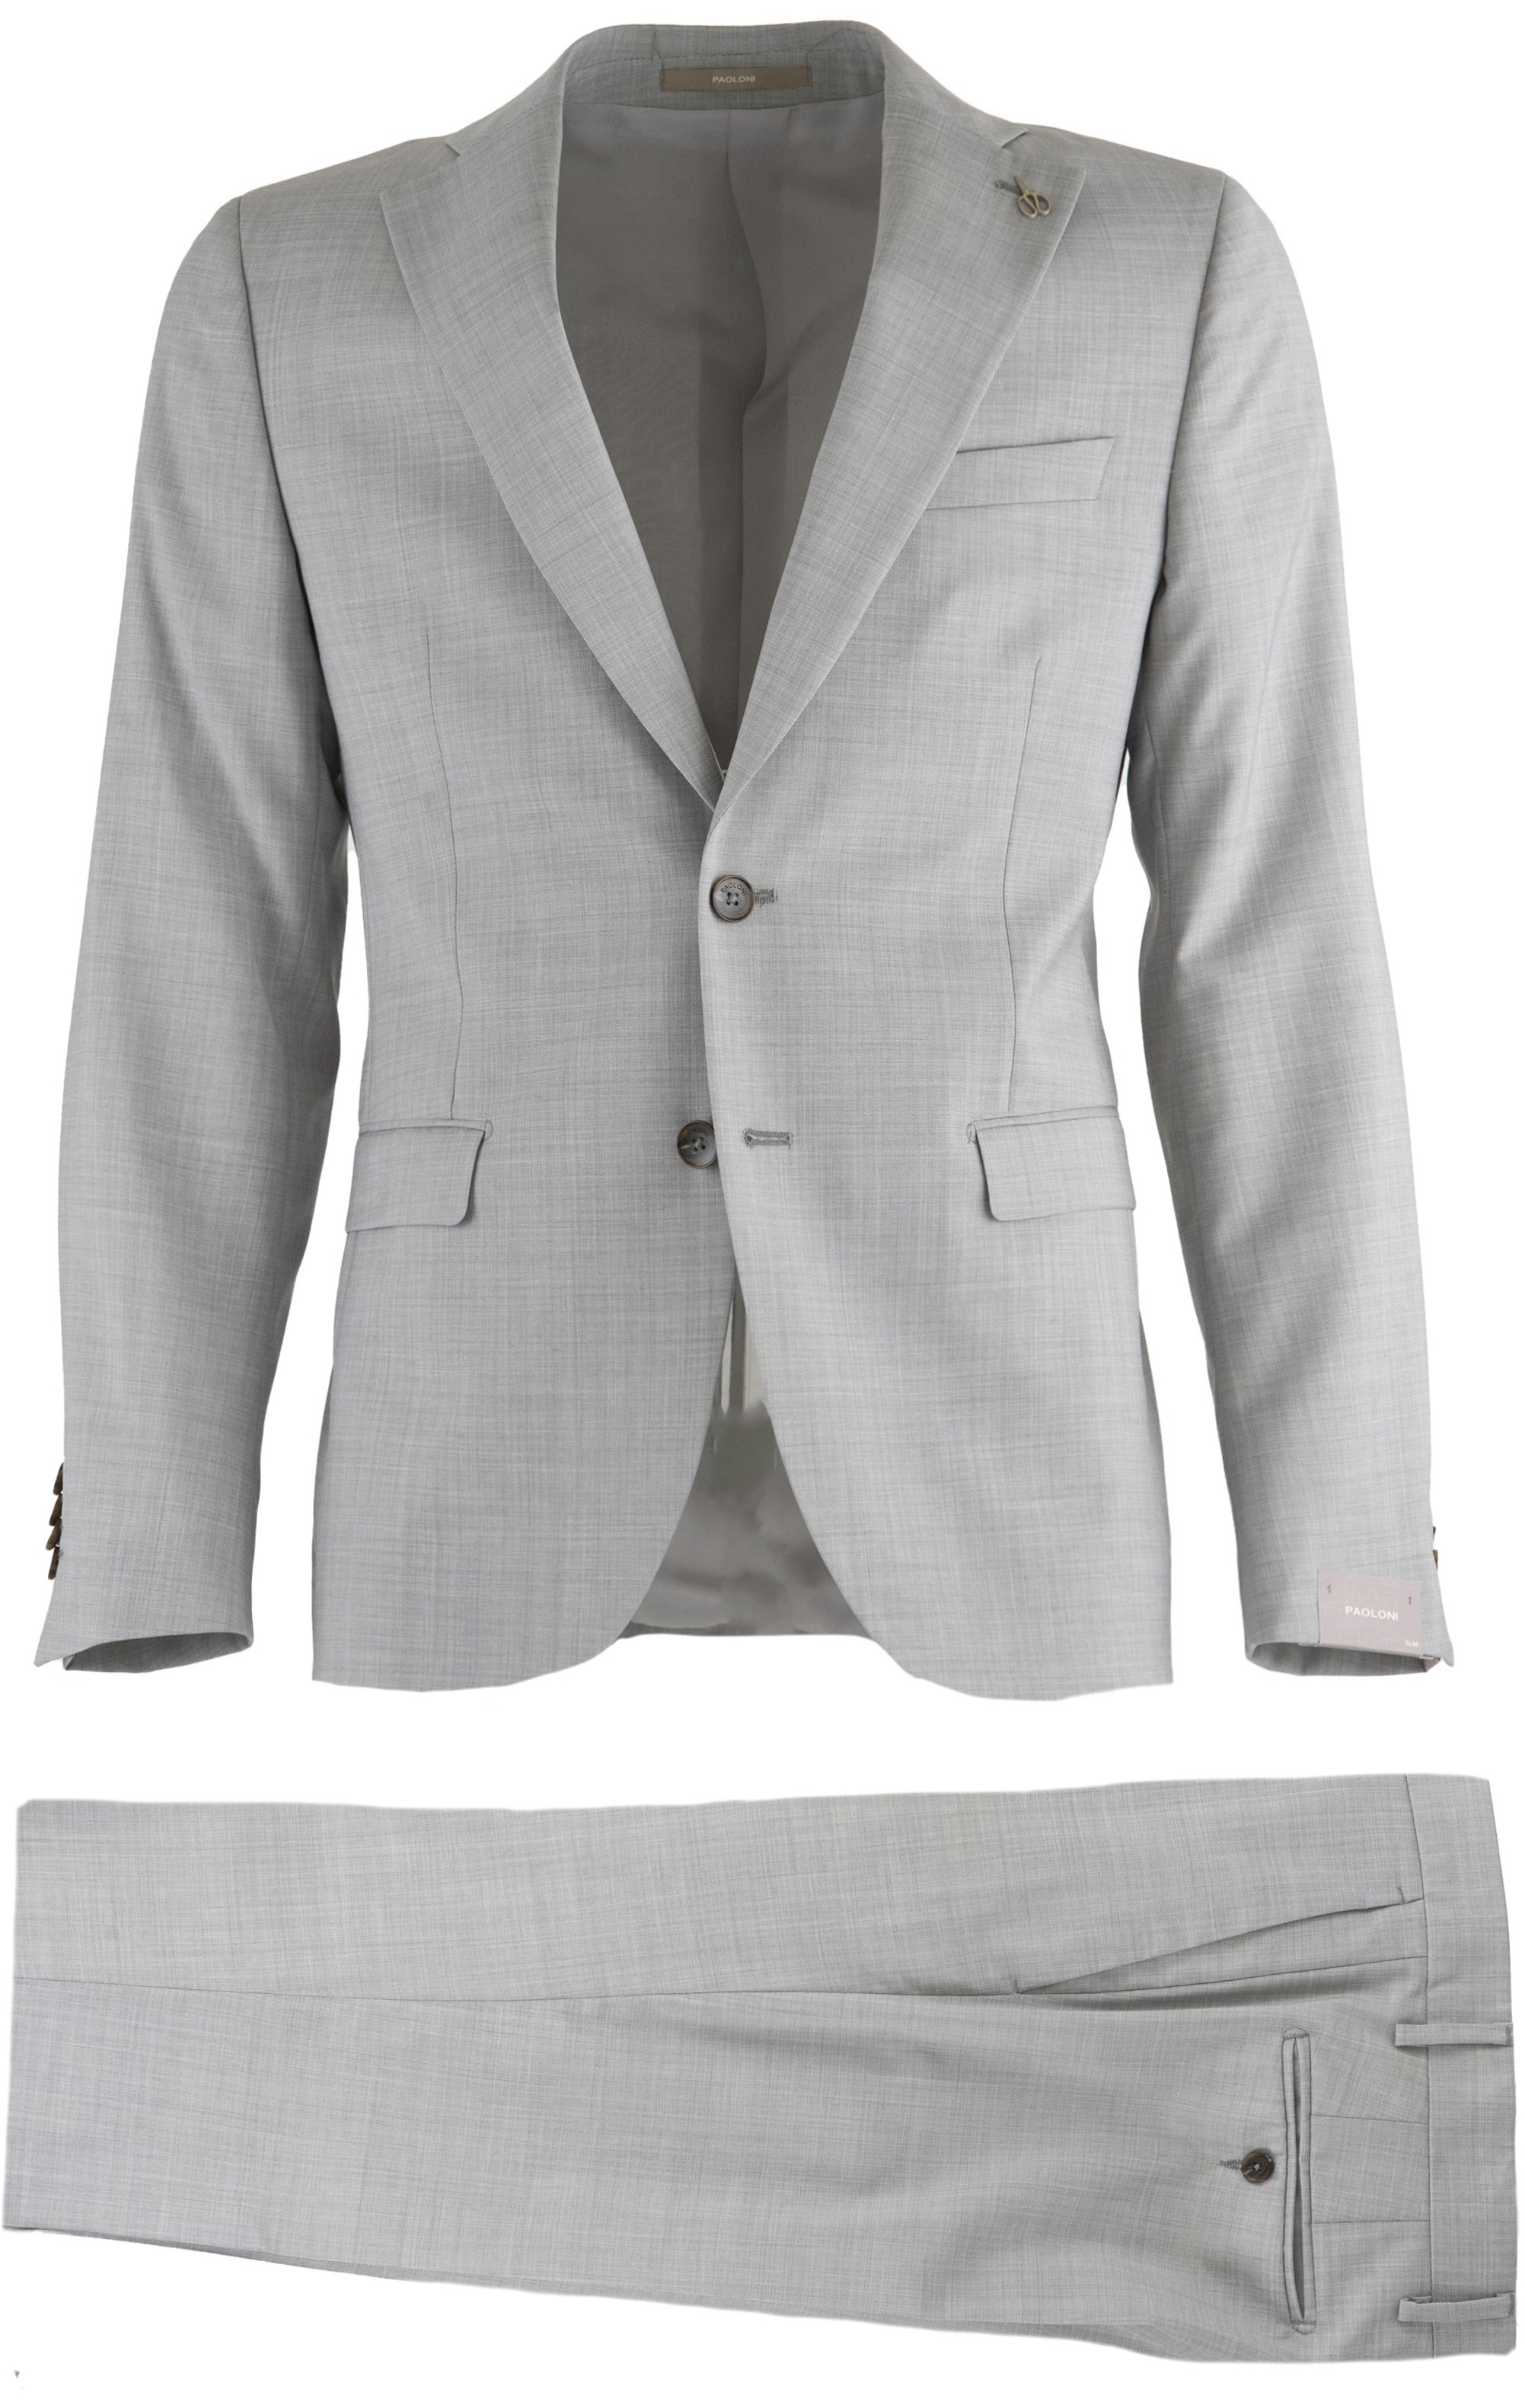 Paoloni Men's Suit 3211A448 22109 95